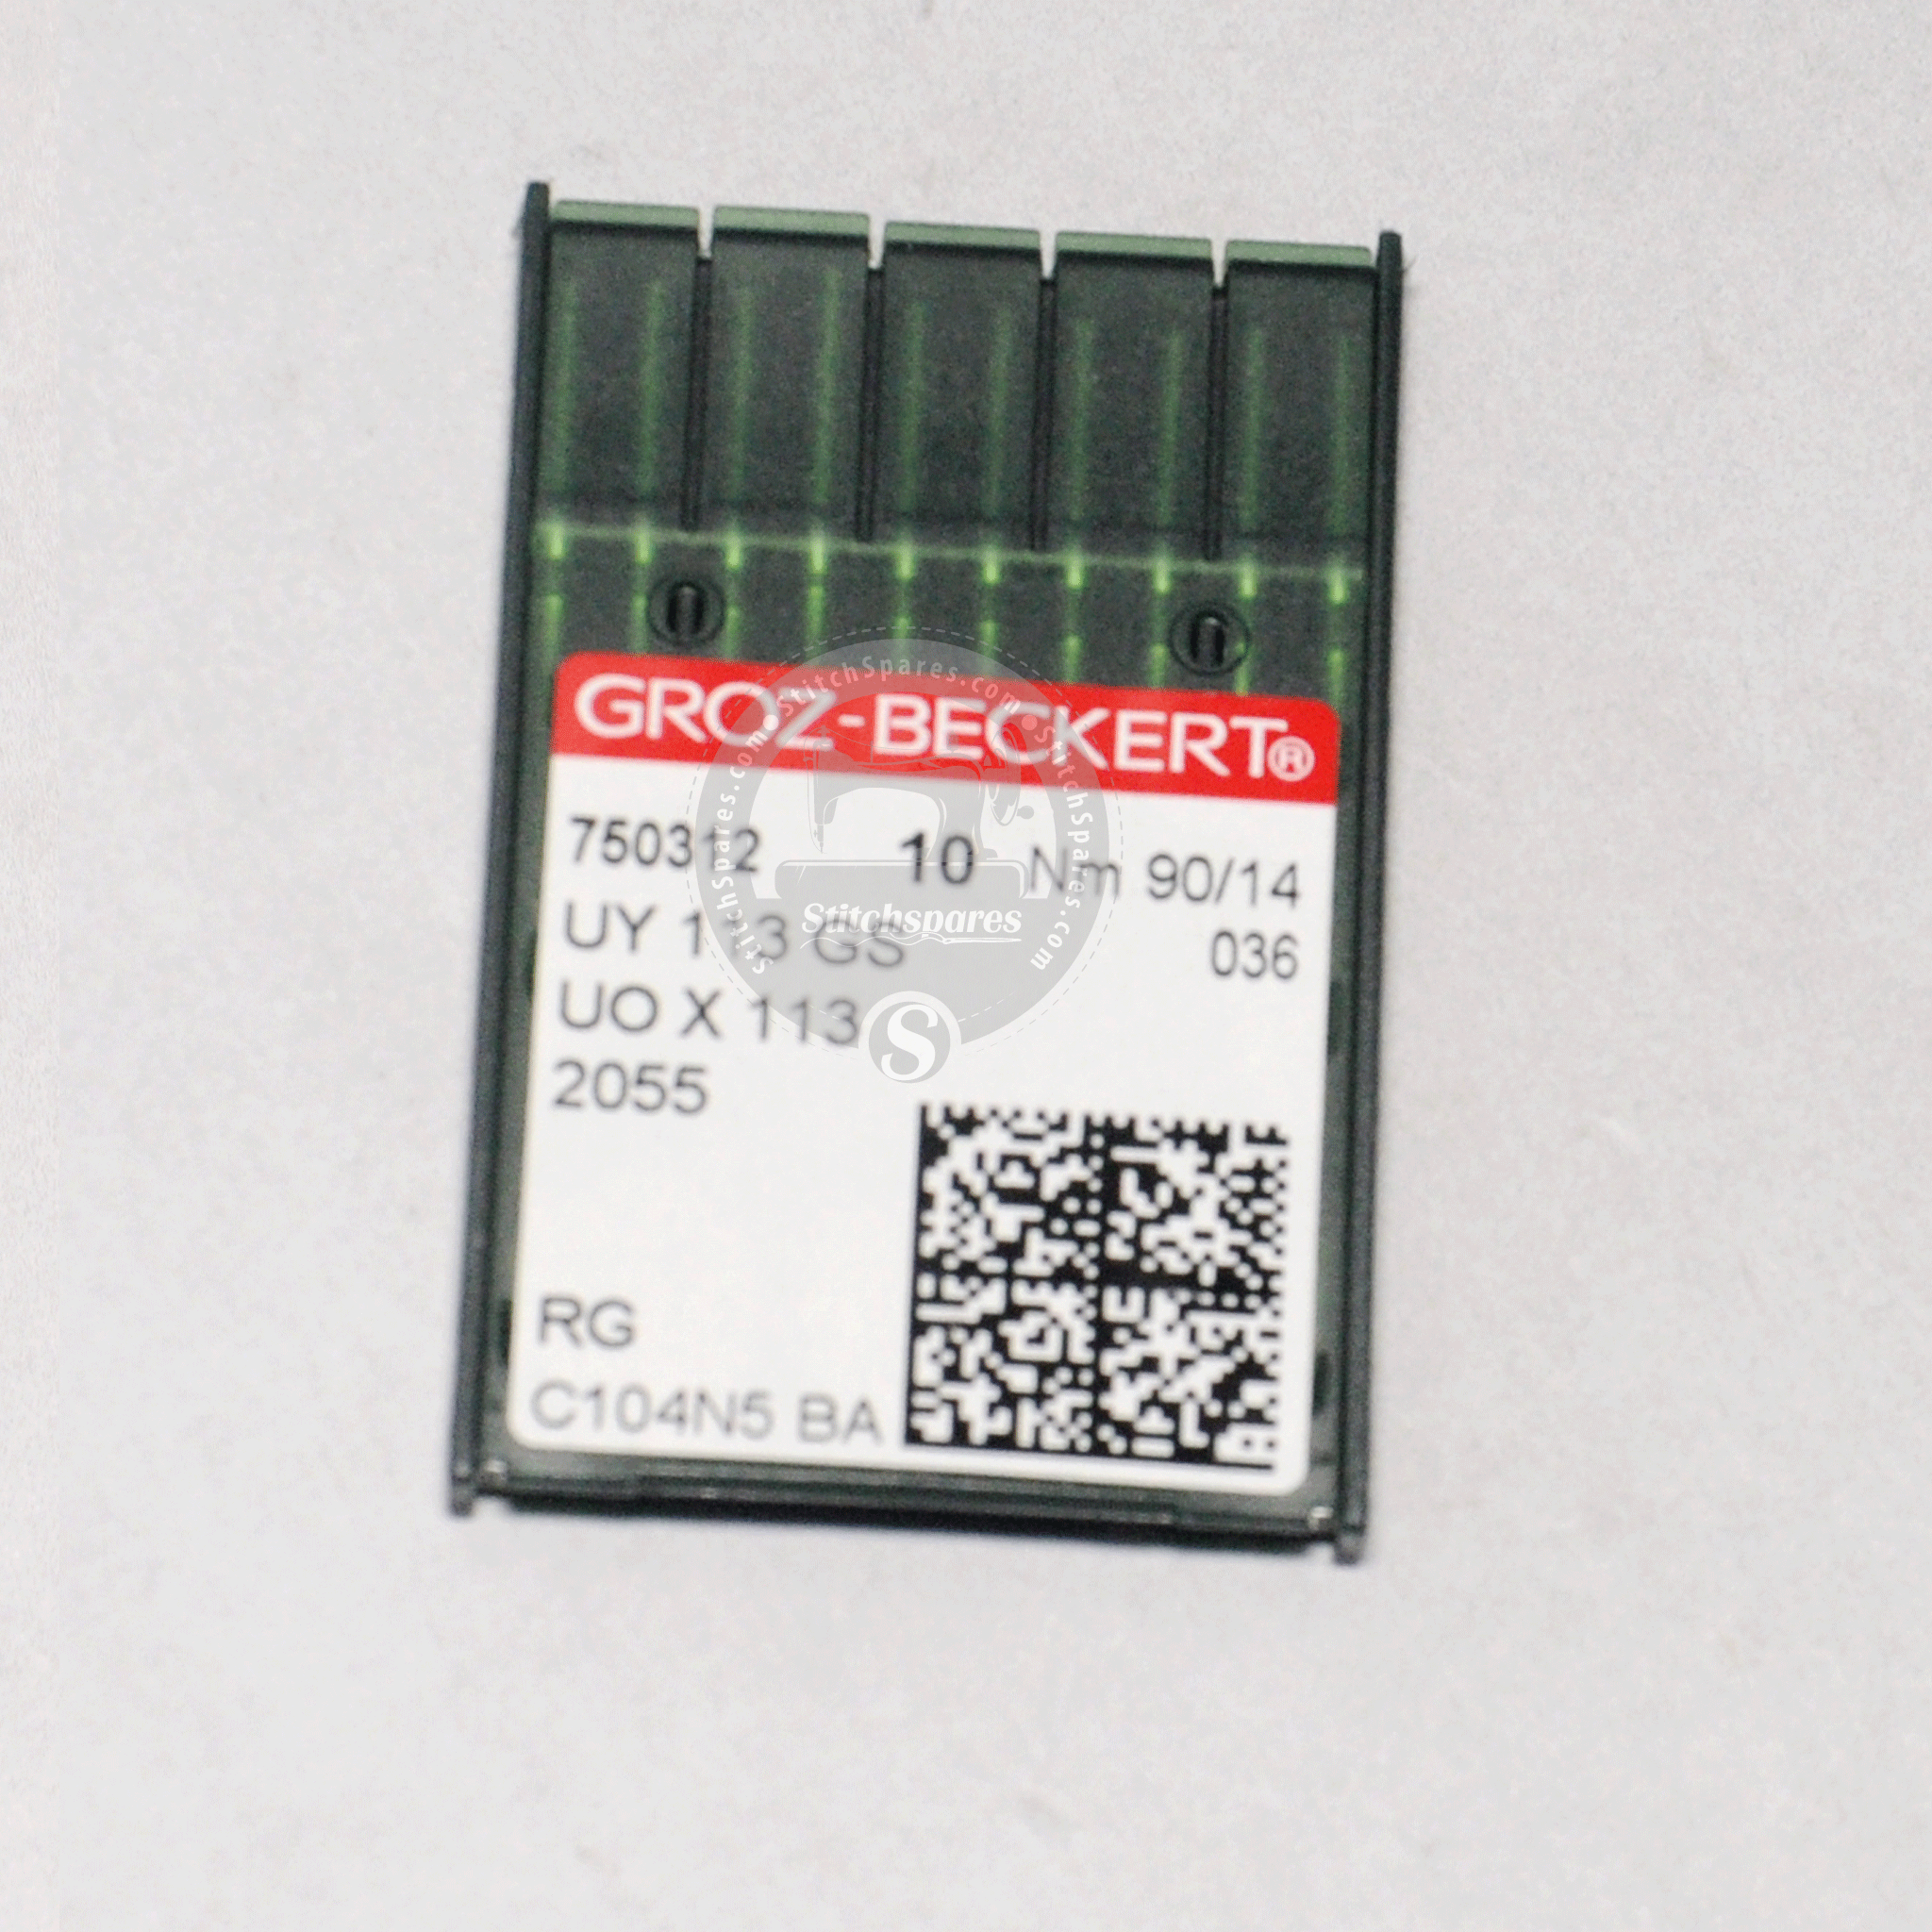 UOX113 UYX113GS Groz-Beckert Aguja para máquina de fijación de cintas y elásticos de múltiples agujas